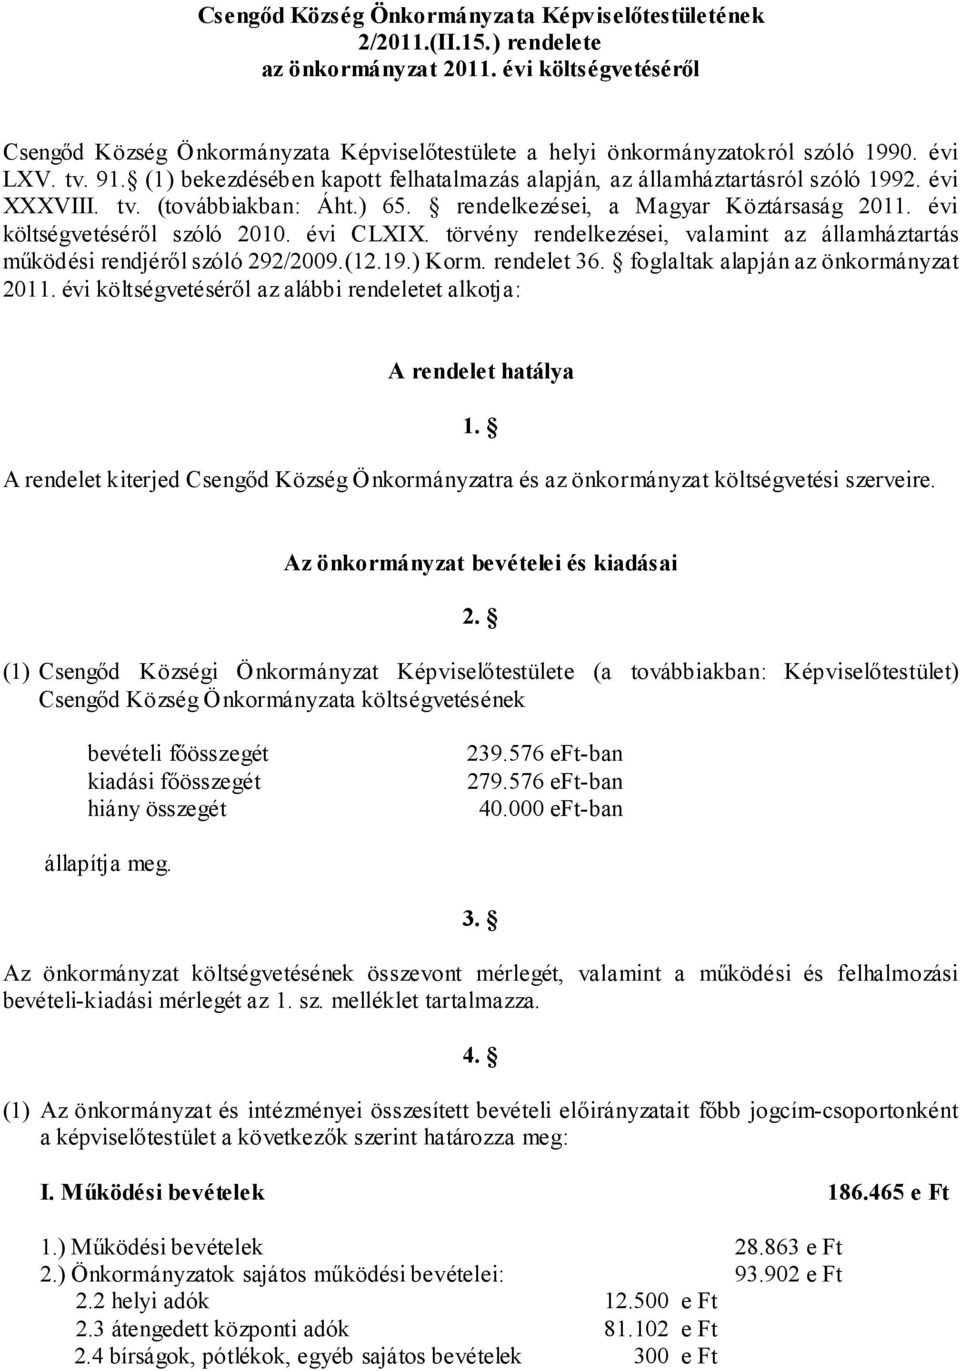 (1) bekezdésében kapott felhatalmazás alapján, az államháztartásról szóló 1992. évi XXXVIII. tv. (továbbiakban: Áht.) 65. rendelkezései, a Magyar Köztársaság 2011. évi költségvetéséről szóló 2010.